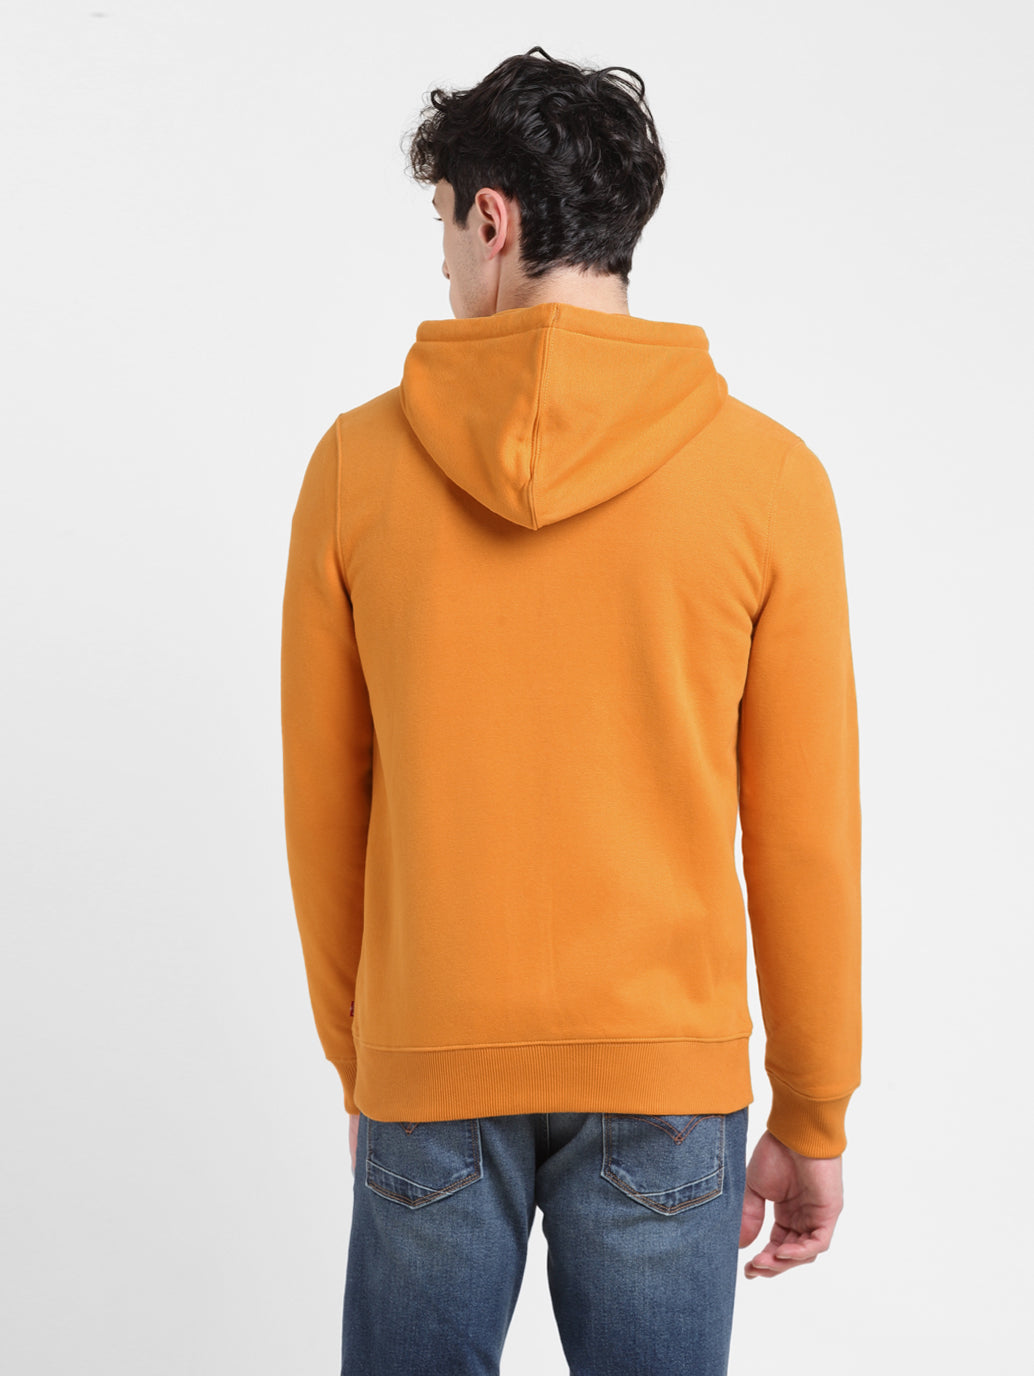 Men's Solid Orange Hooded Sweatshirt – Levis India Store